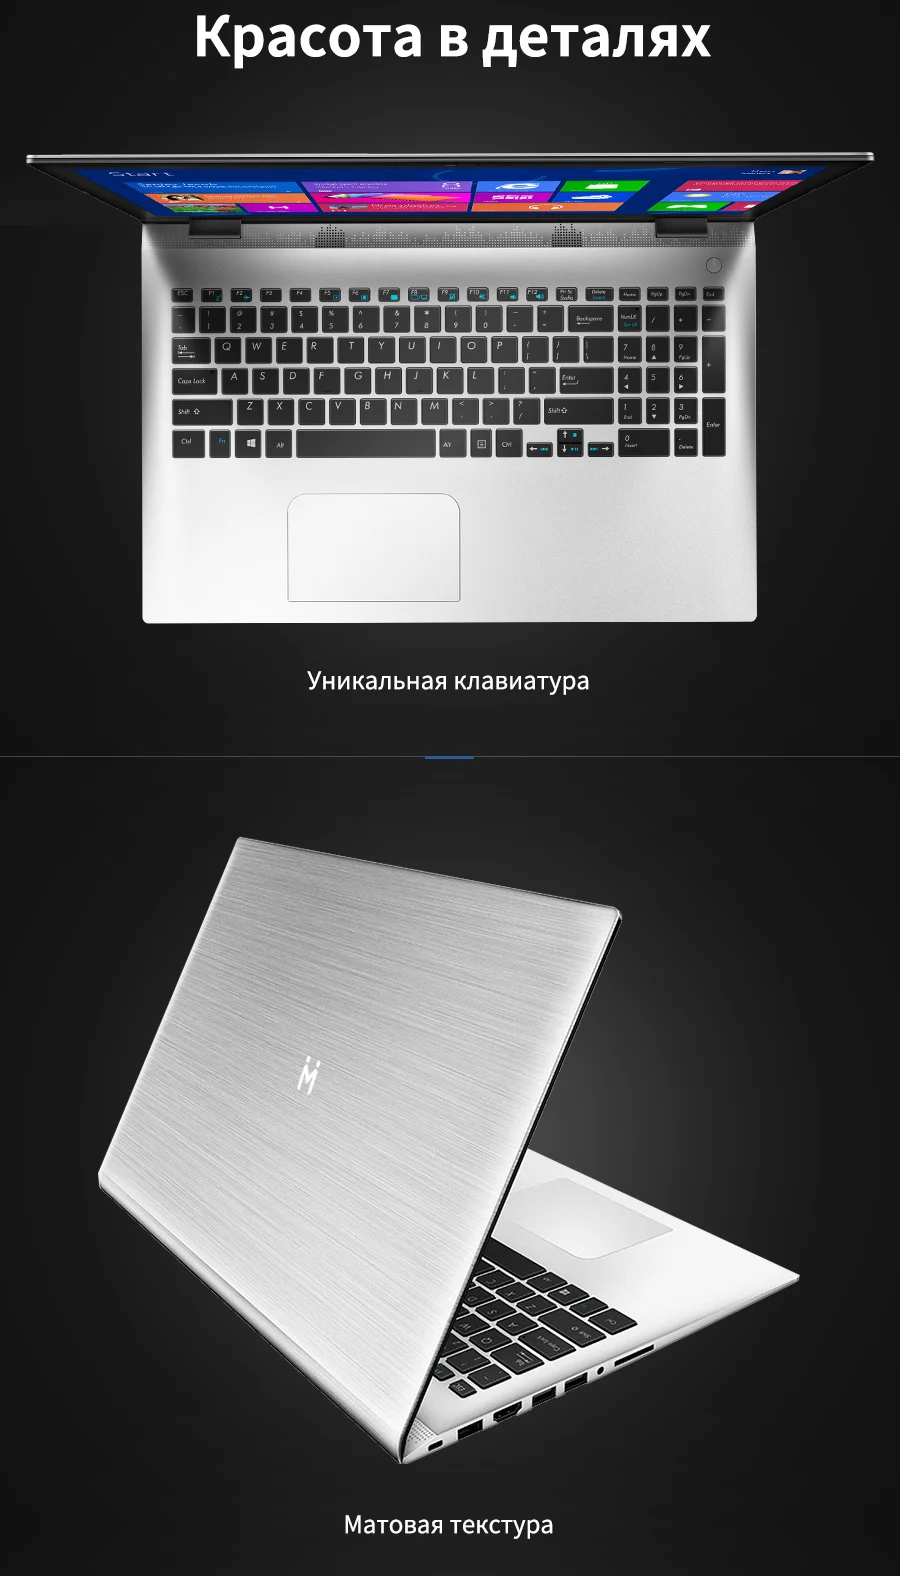 Ноутбук MAIBENBEN XiaoMai 5 Pro 15," FHD/Intel 4415U/4ГБ/128ГБ SSD/MX150/DOS